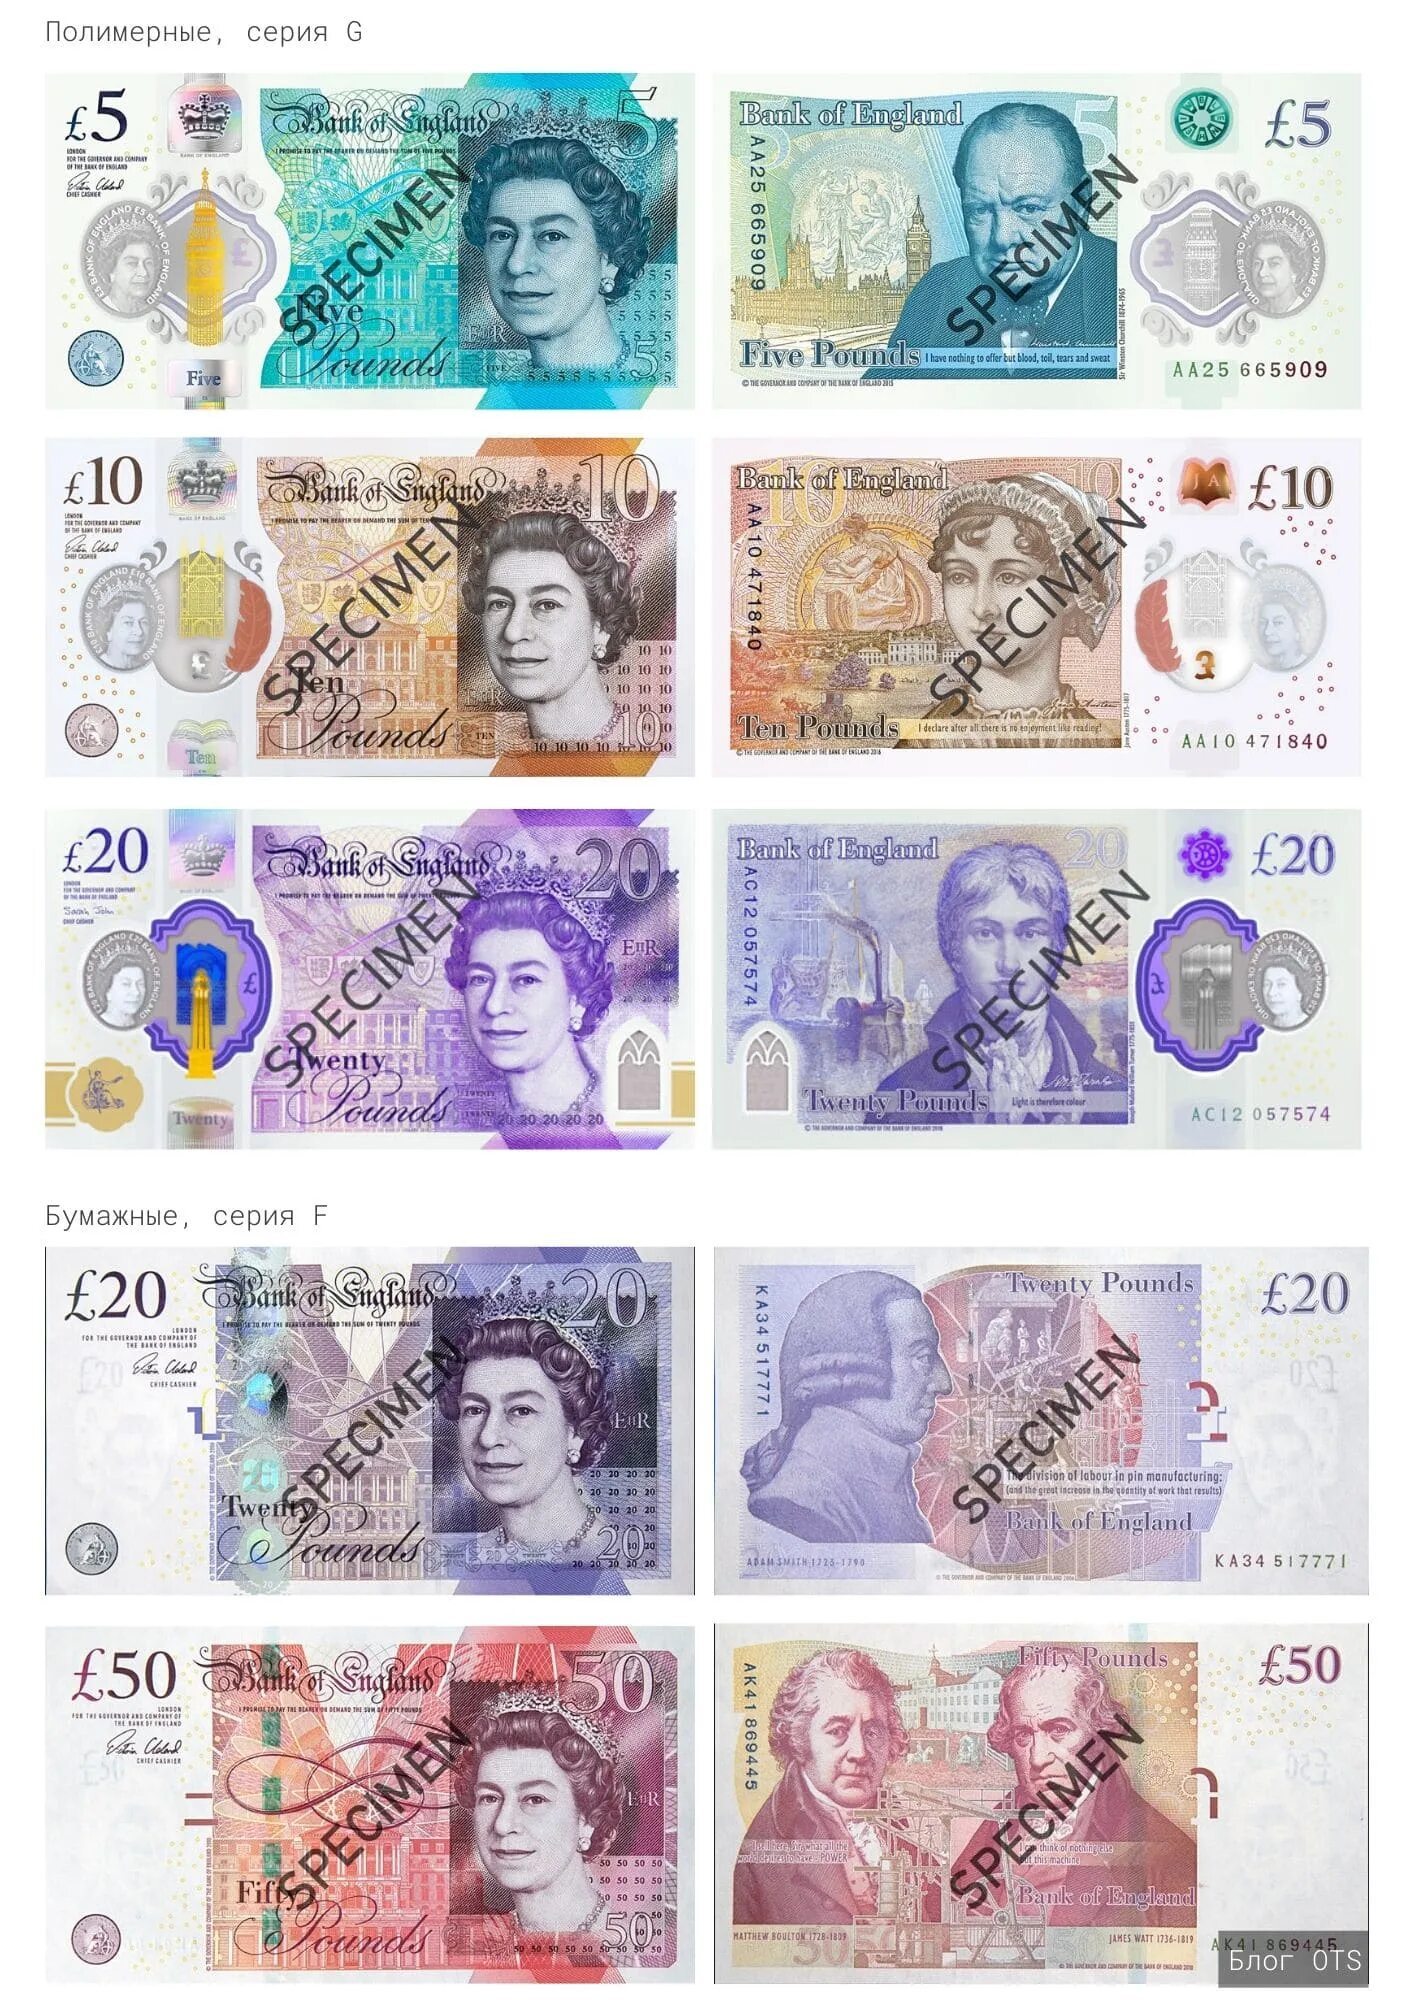 Банкноты фунтов стерлингов Великобритании. Британские банкноты: 1 фунт стерлингов. Валюта Англии 50 фунт стерлингов. 100 Фунтов стерлингов Великобритании.